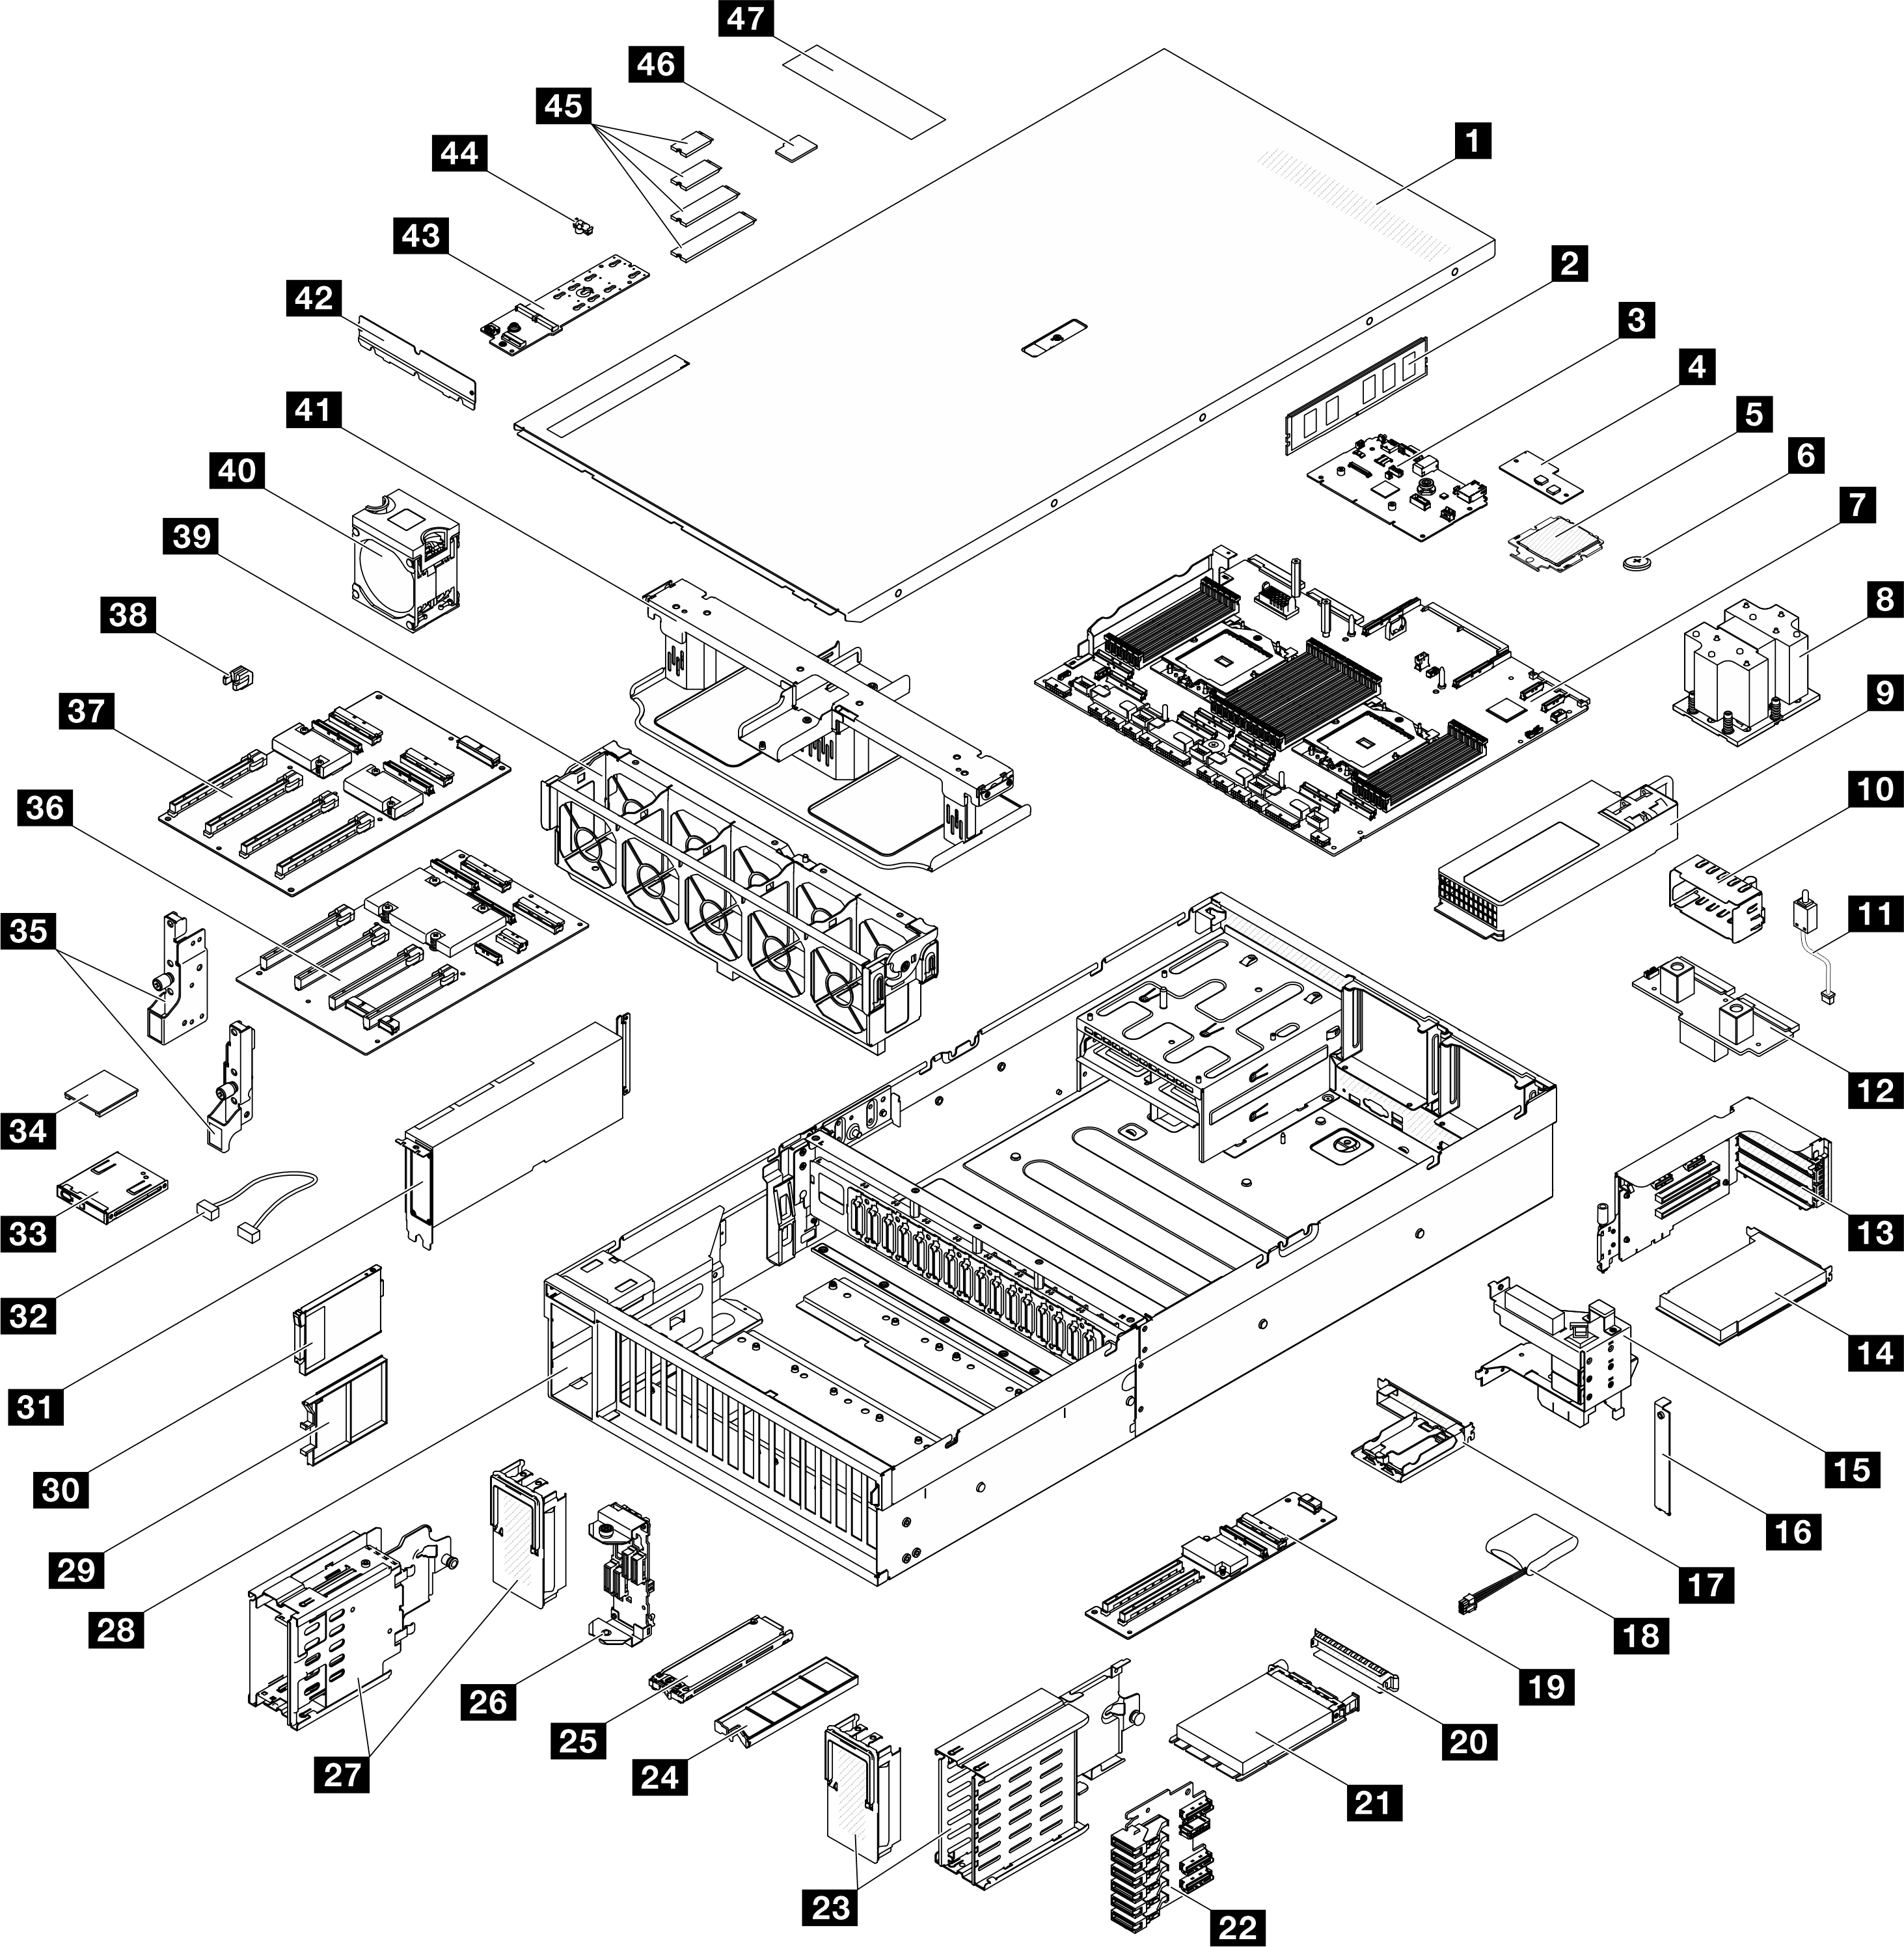 Server components of the 8-DW GPU モデル